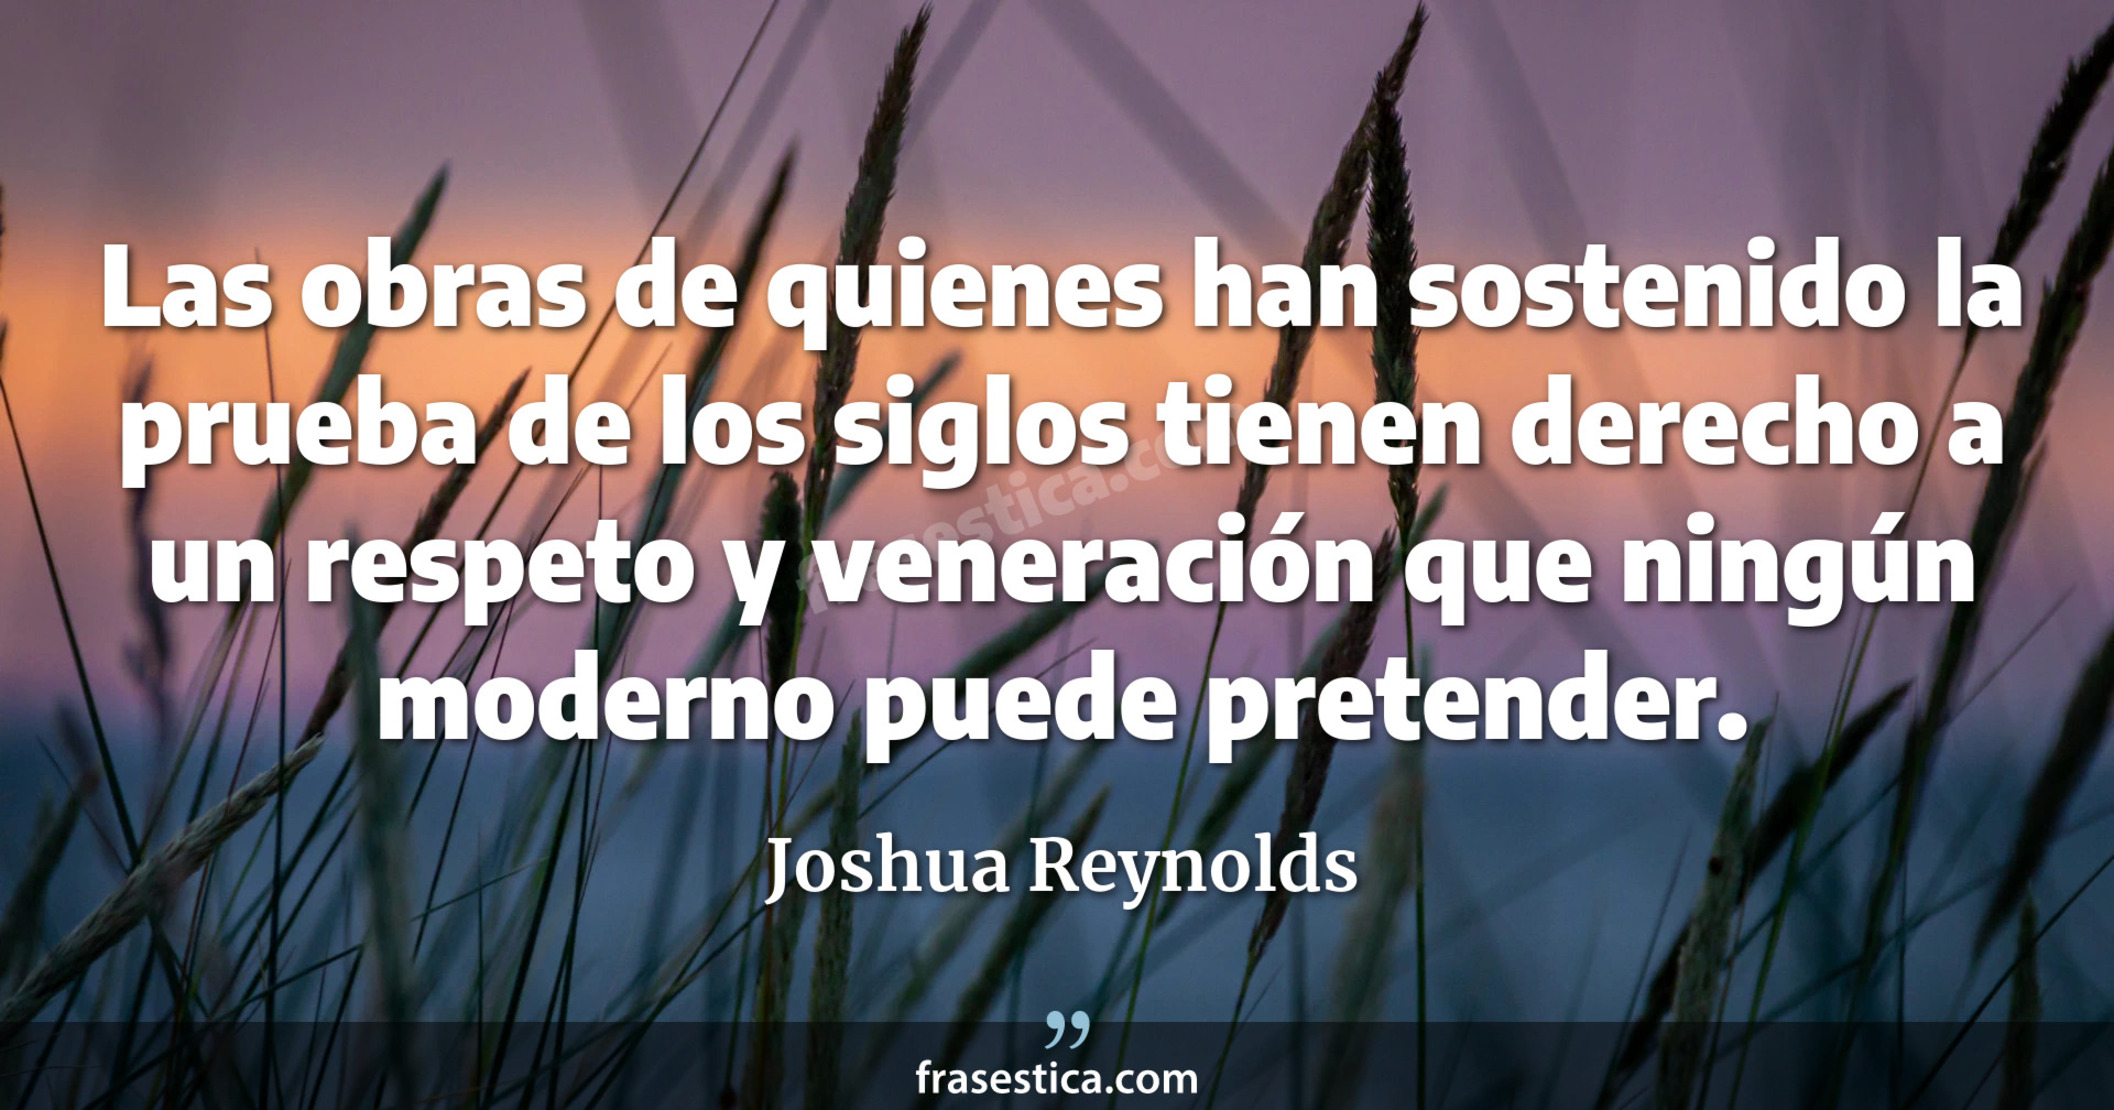 Las obras de quienes han sostenido la prueba de los siglos tienen derecho a un respeto y veneración que ningún moderno puede pretender. - Joshua Reynolds